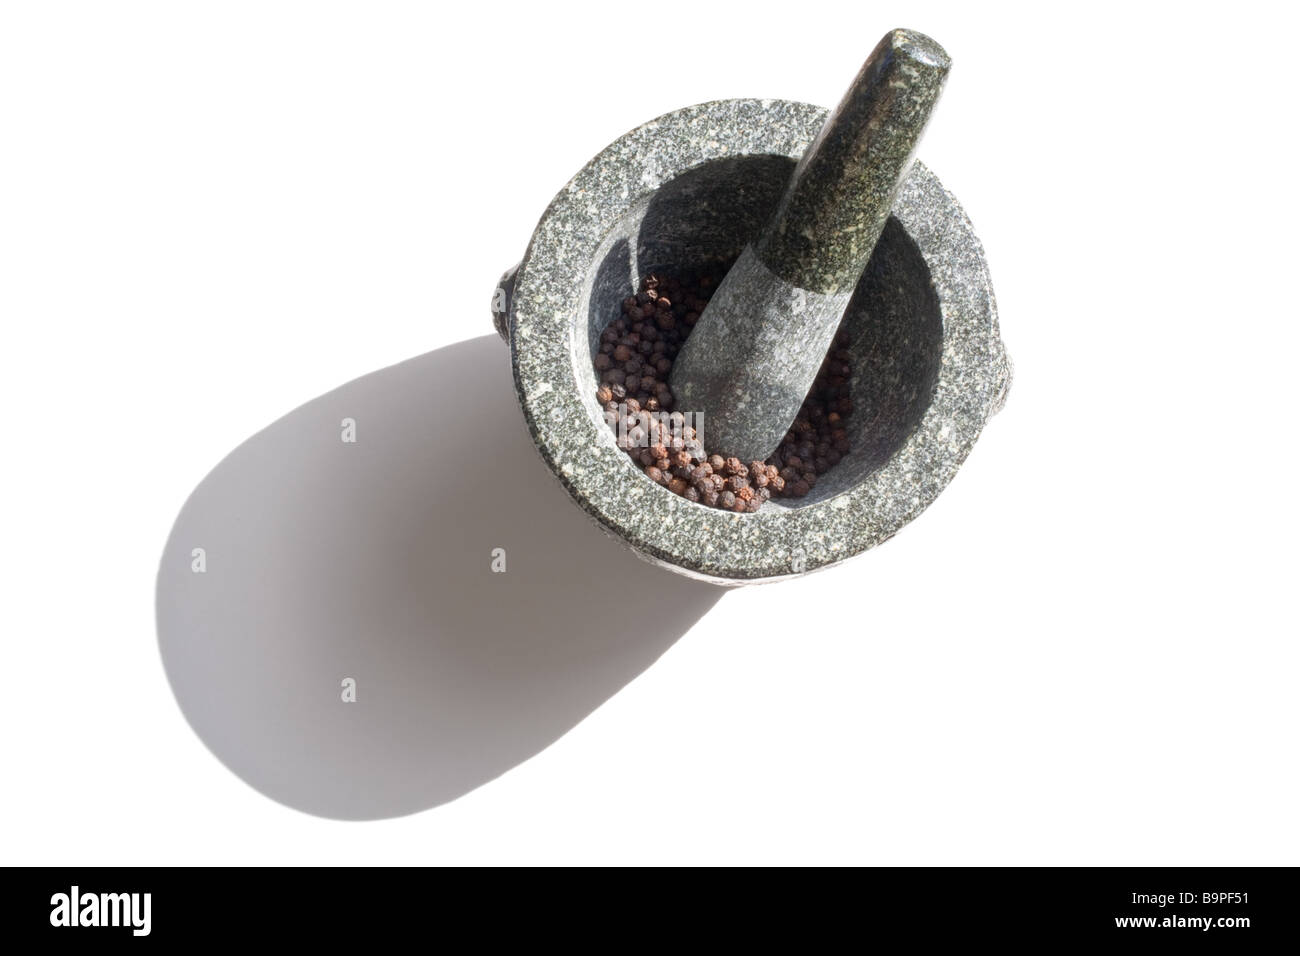 Mortier et pilon en granit avec poivre noir sur un fond blanc. Banque D'Images